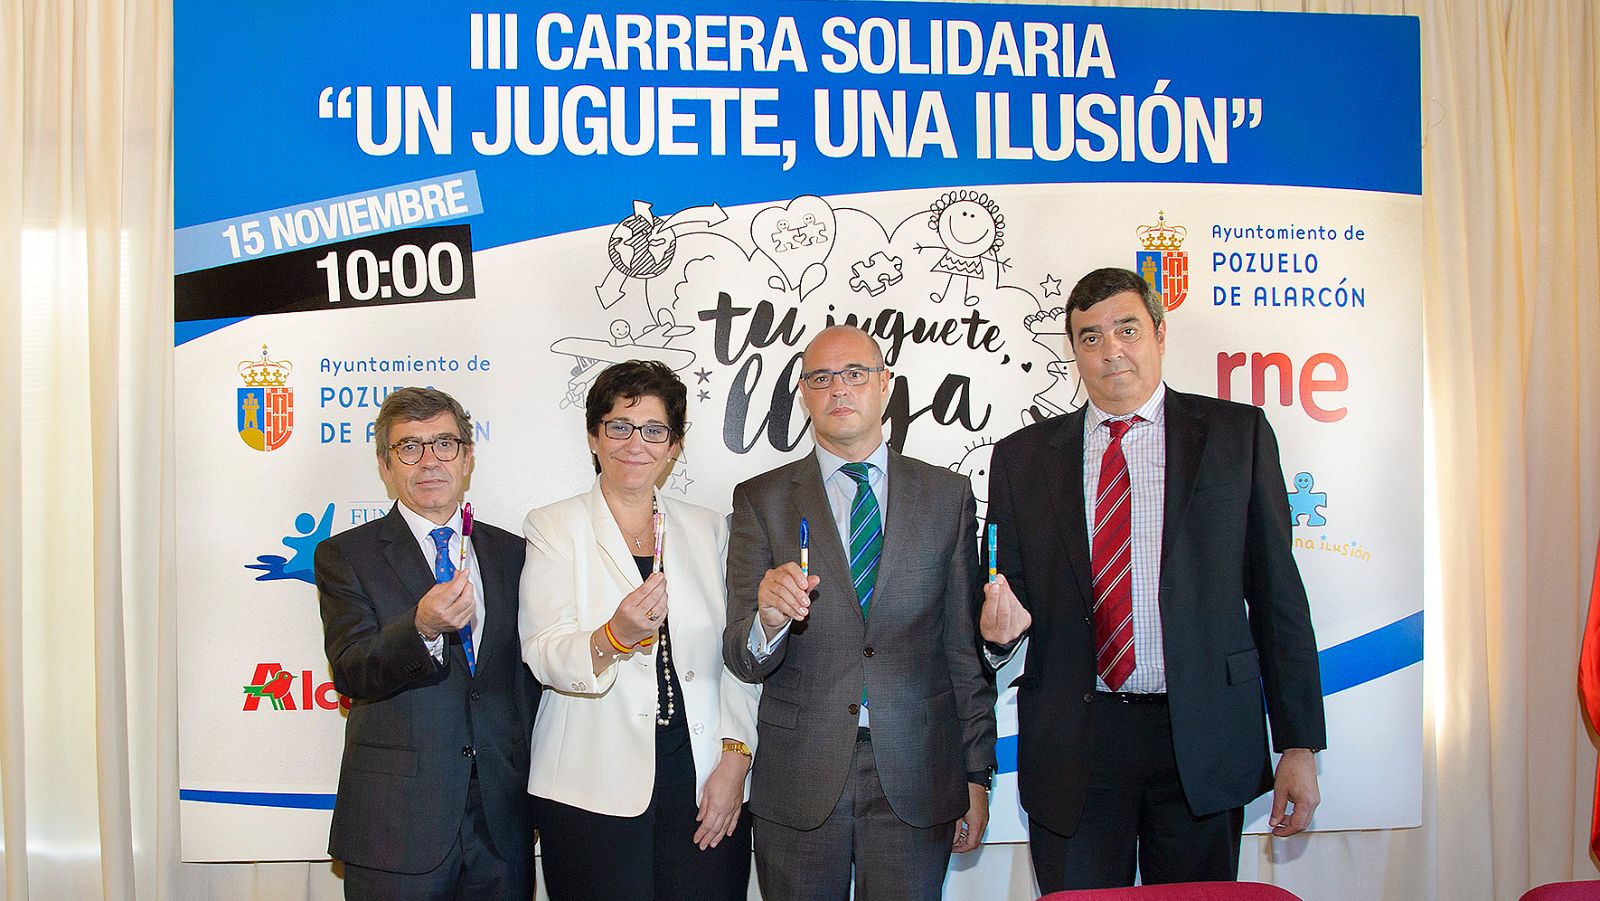 De derecha a izquierda: Antonio Szigriszt, Alberto Azcona, Susana Pérez Quislant y Antonio Chicón.